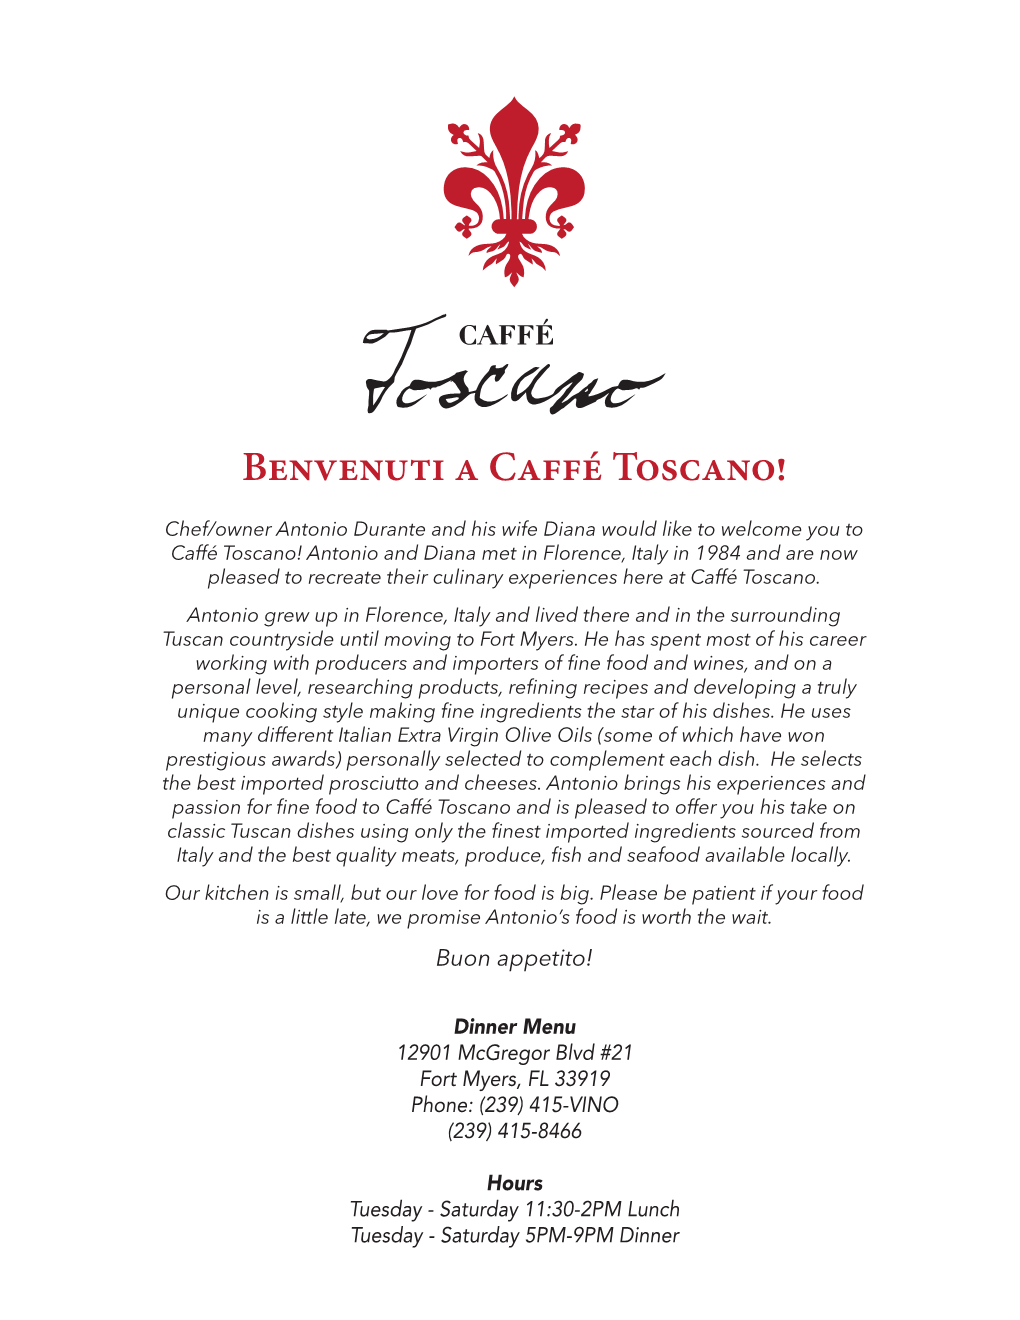 Benvenuti a Caffé Toscano!